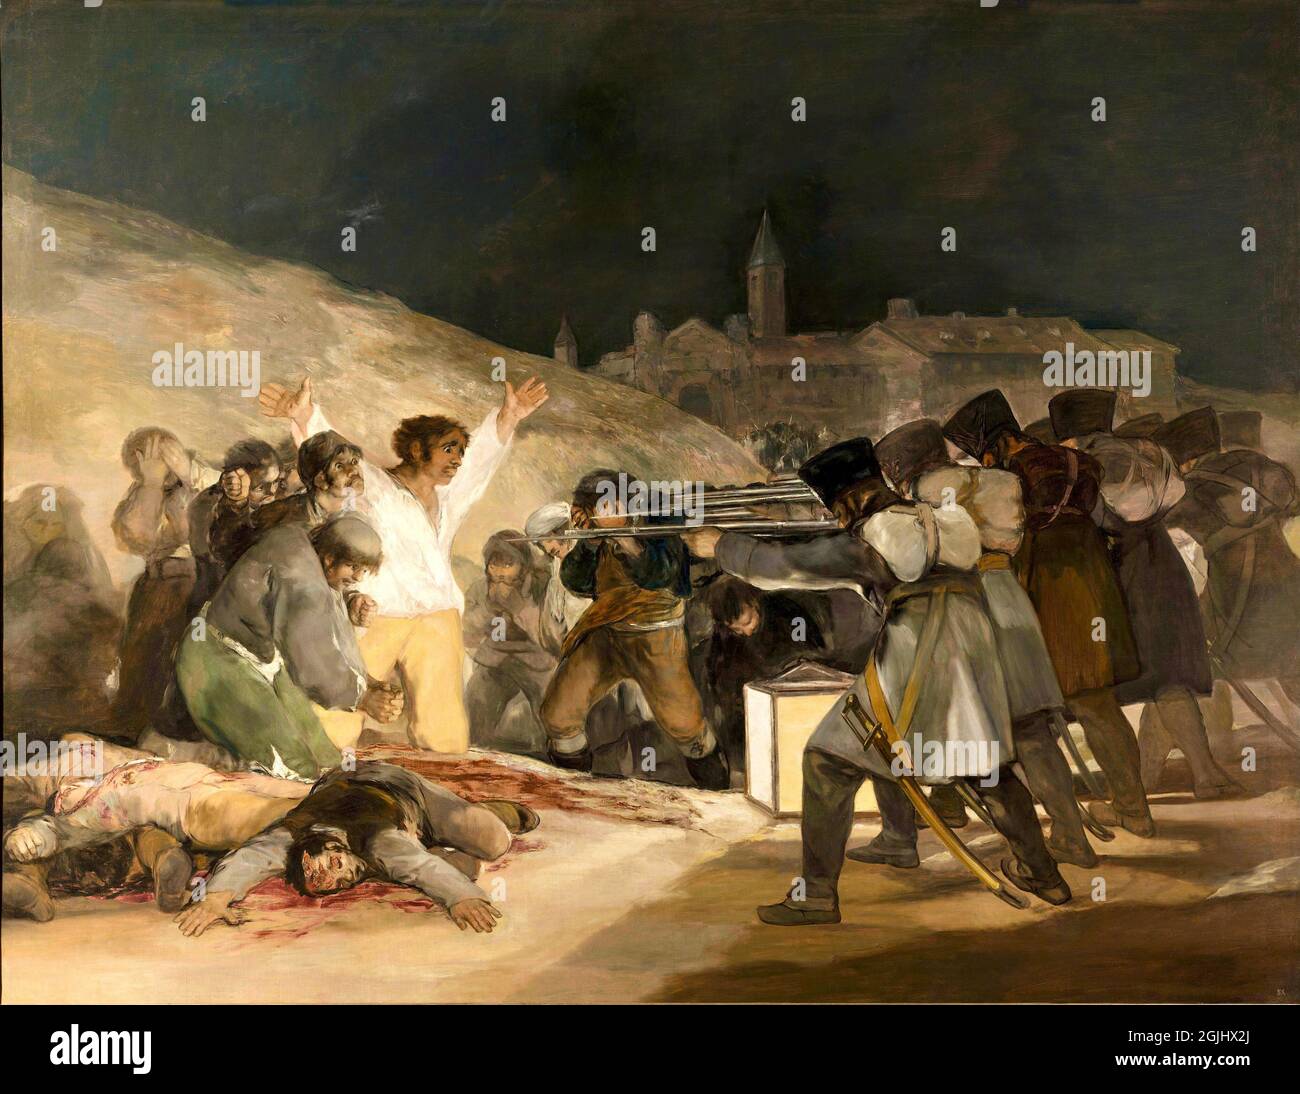 Classic artwork - El Tres de Mayo - Francisco de Goya - Third of May - 1814 Stock Photo